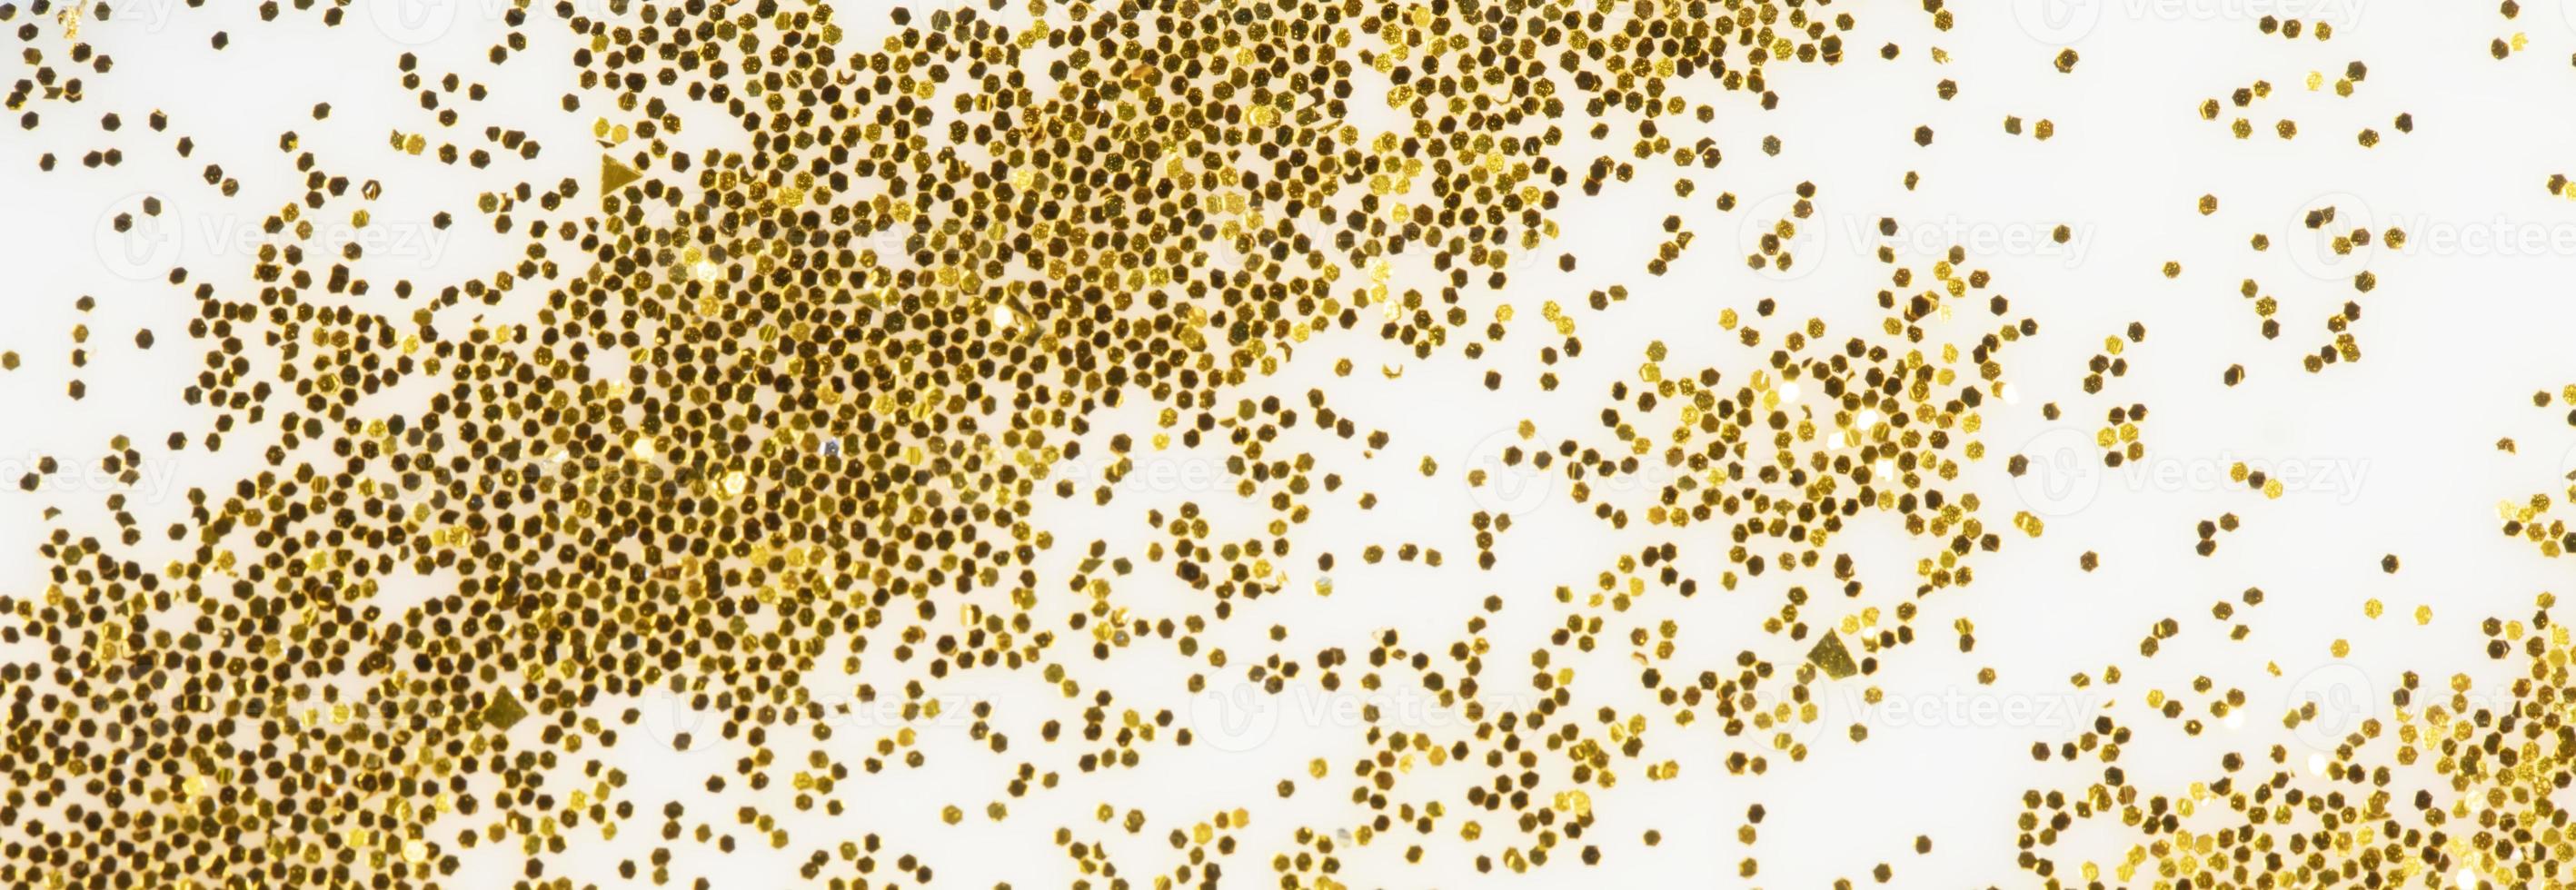 festlig eller glamorös bakgrund. guld pärlar spridd på en vit bakgrund. foto